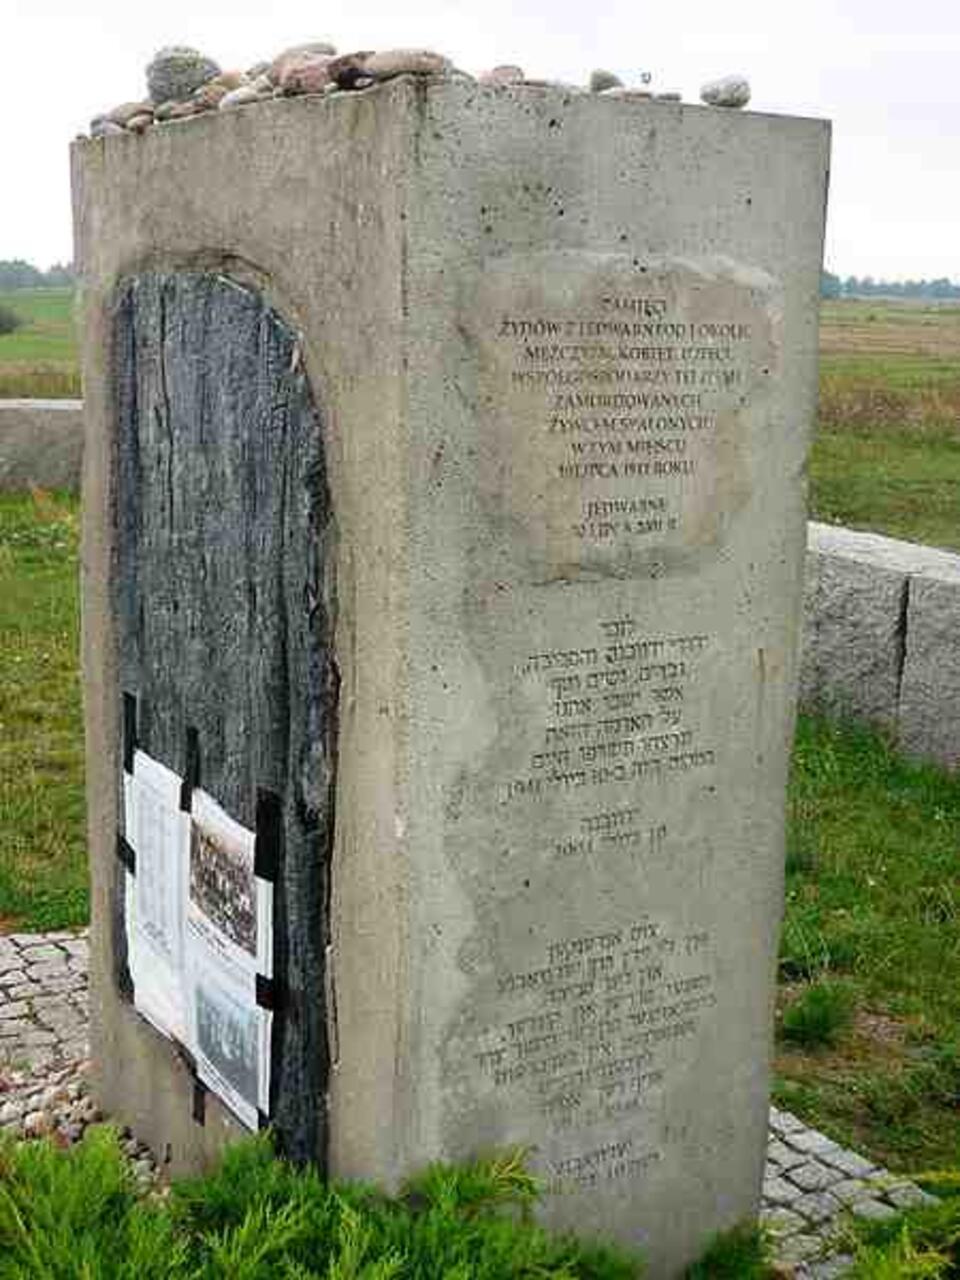 Wikipedia - fot. F. Czarnowski: pomnik upamiętniający zamordowanych w Jedwabnem